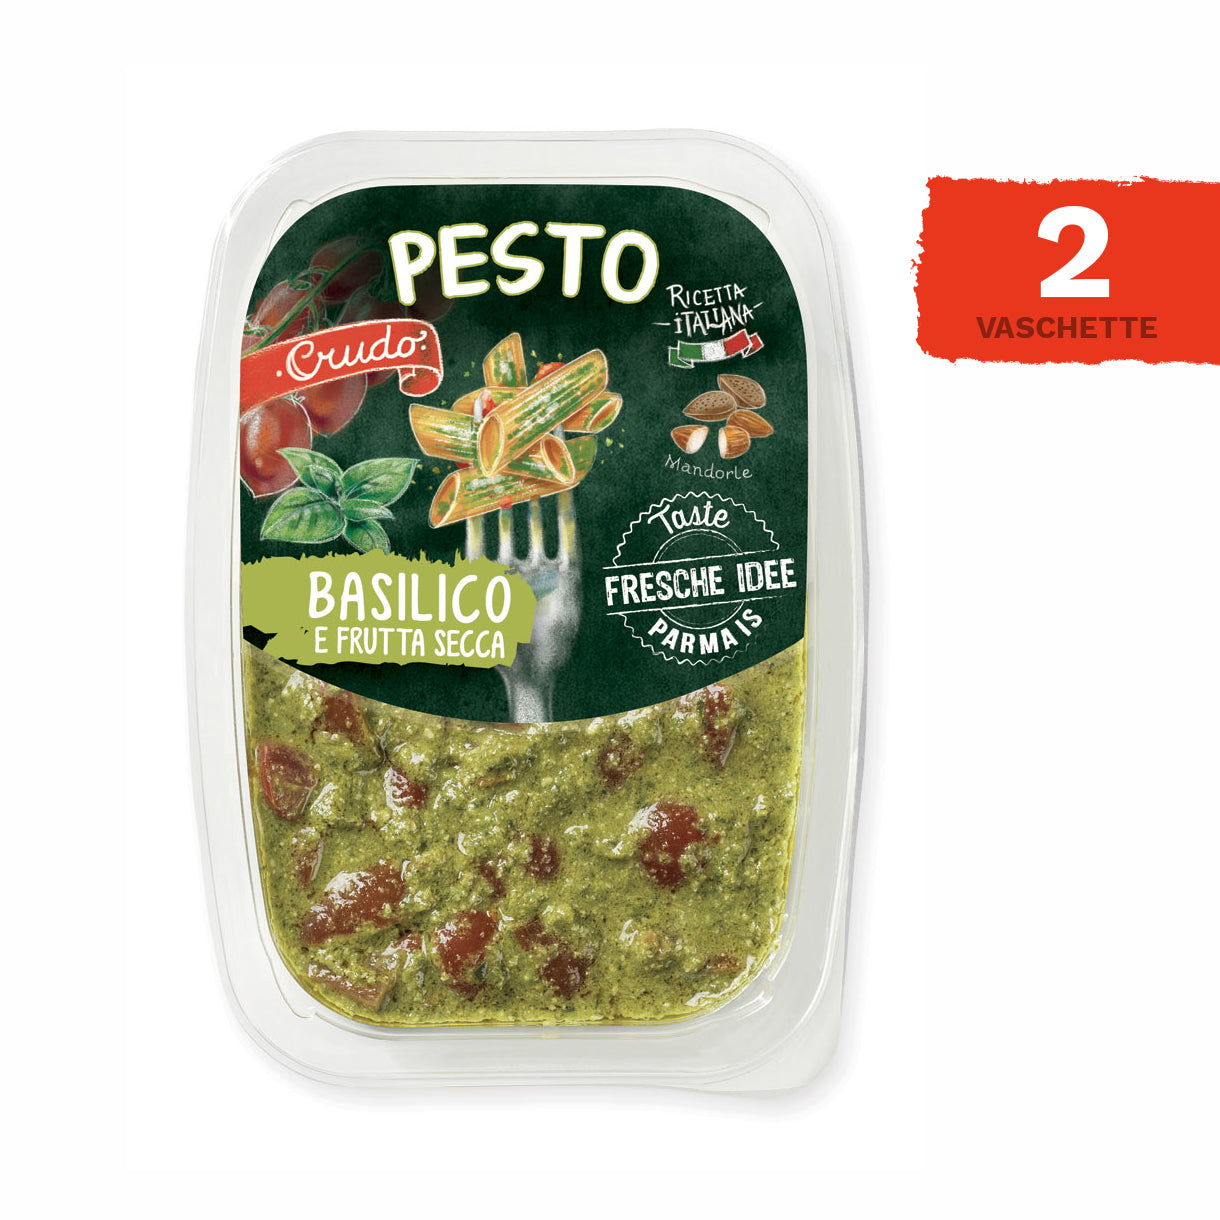 Pesto datterini, basilico e frutta secca - 2 vaschette da 150 gr